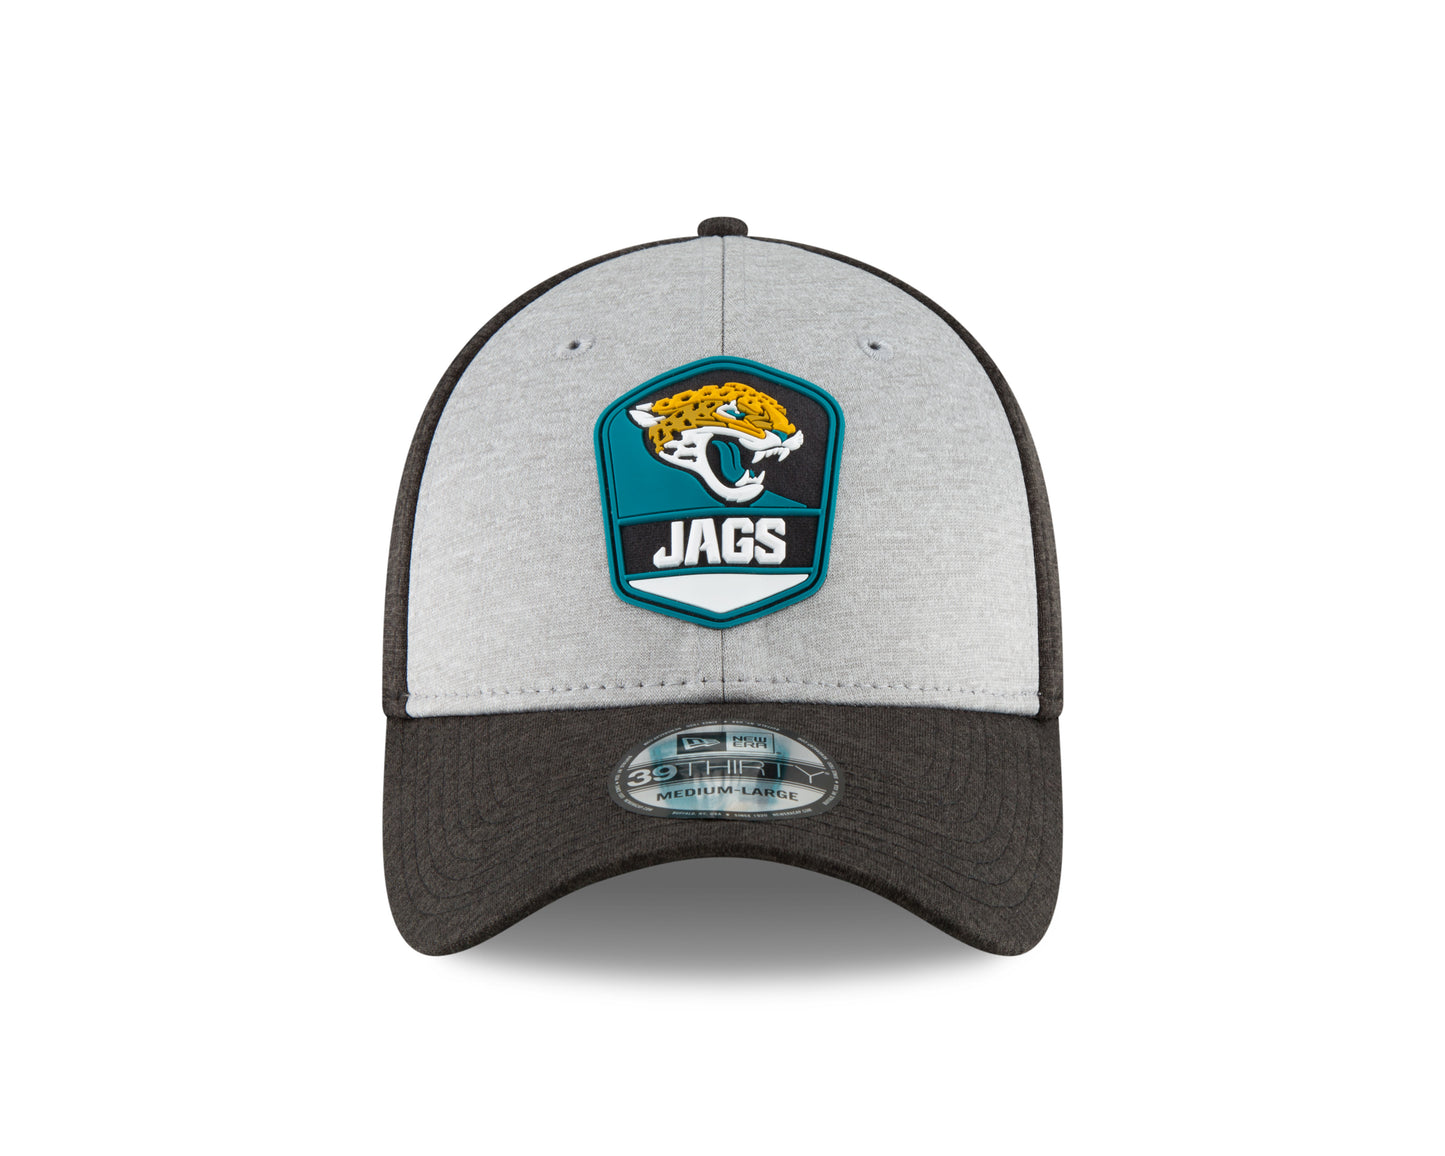 Jacksonville Jaguars New Era NFL Sideline 39THIRTY Flex Hat - Grey/Teal/Black